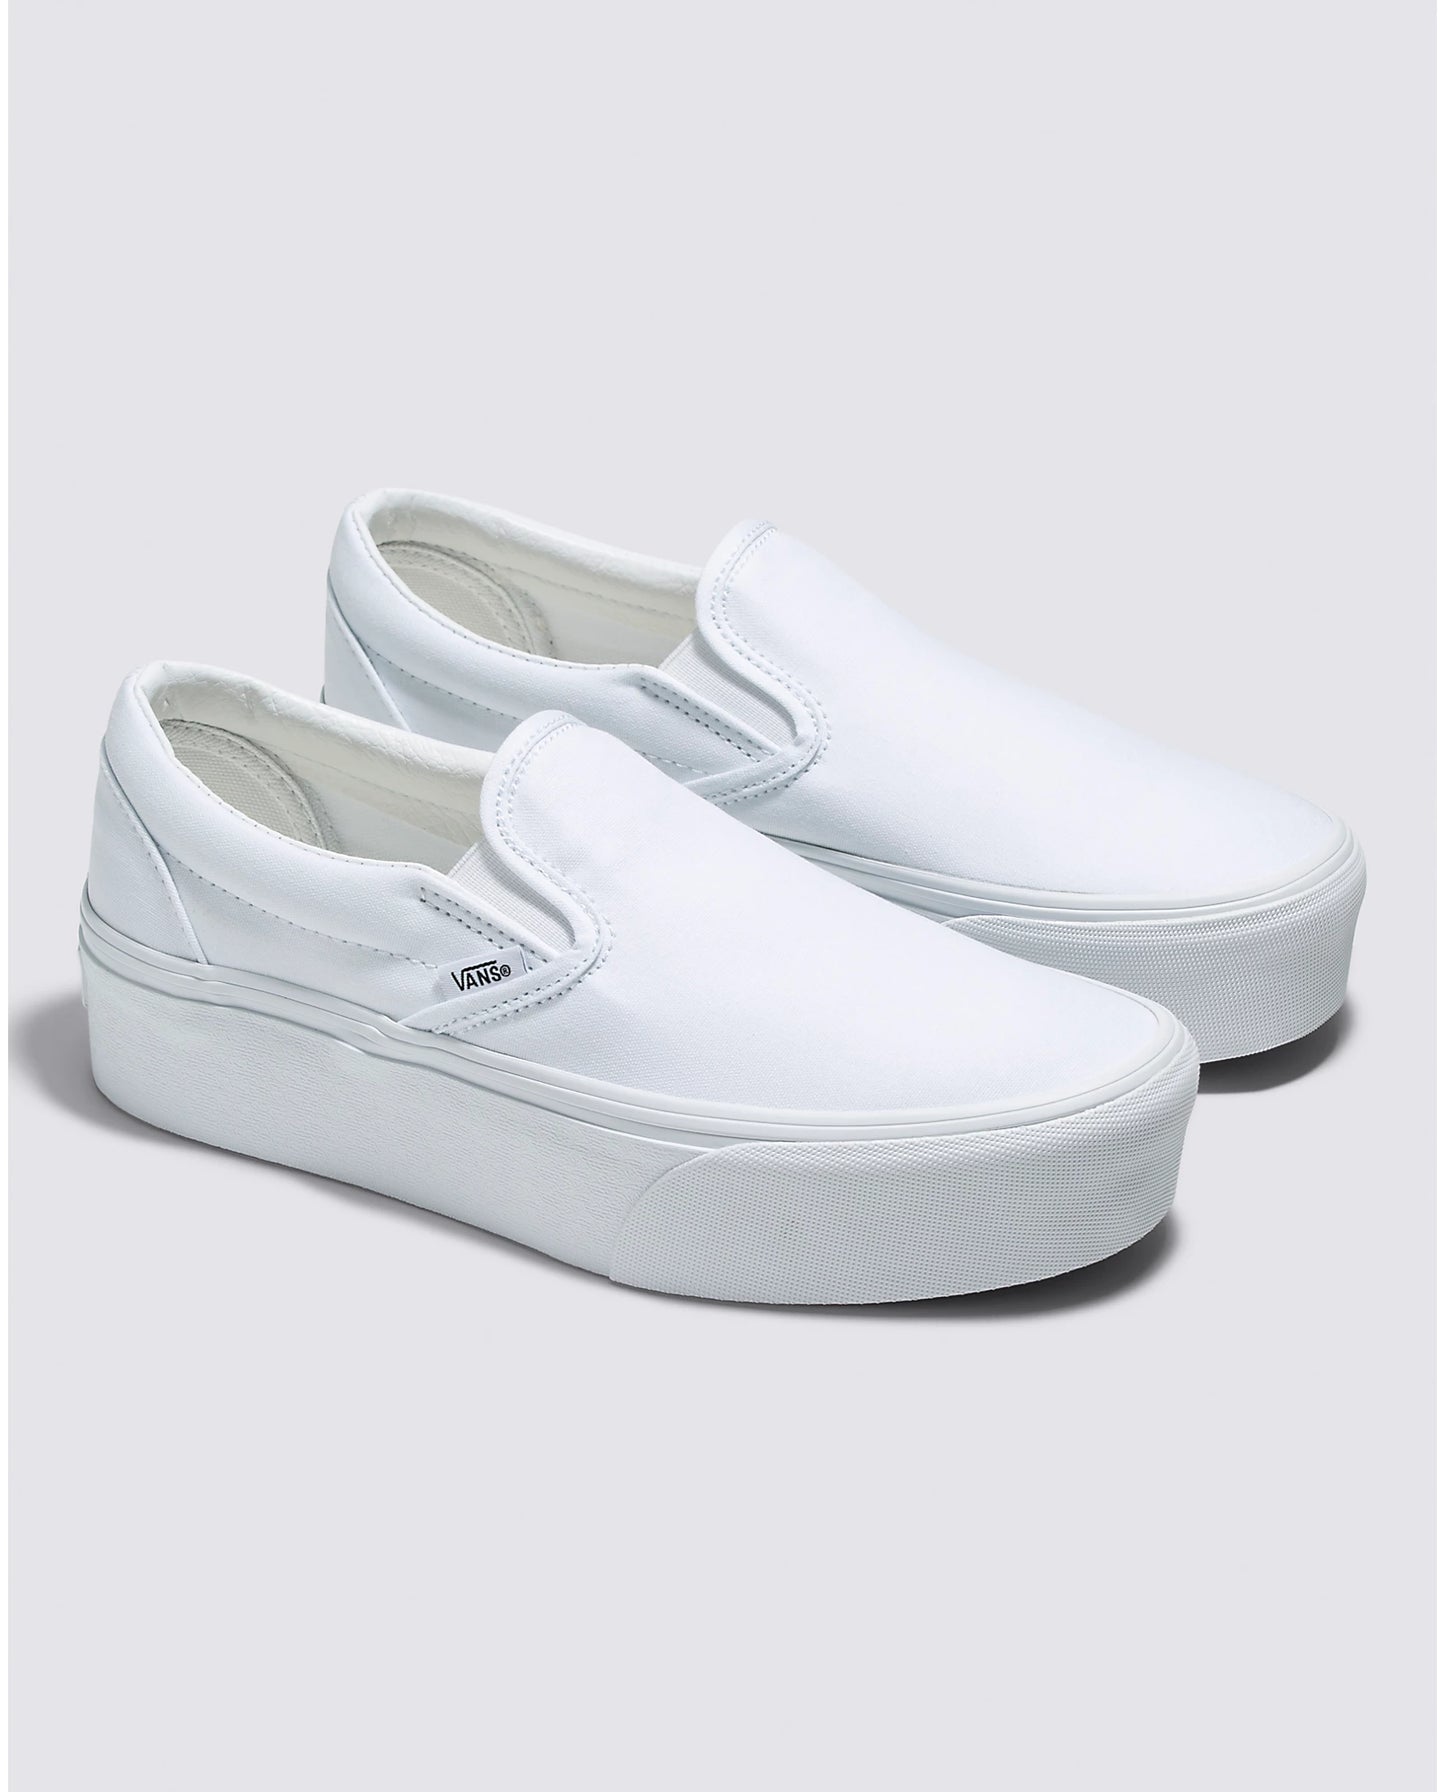 Vans Classic Slip-On Stackform Sneakers